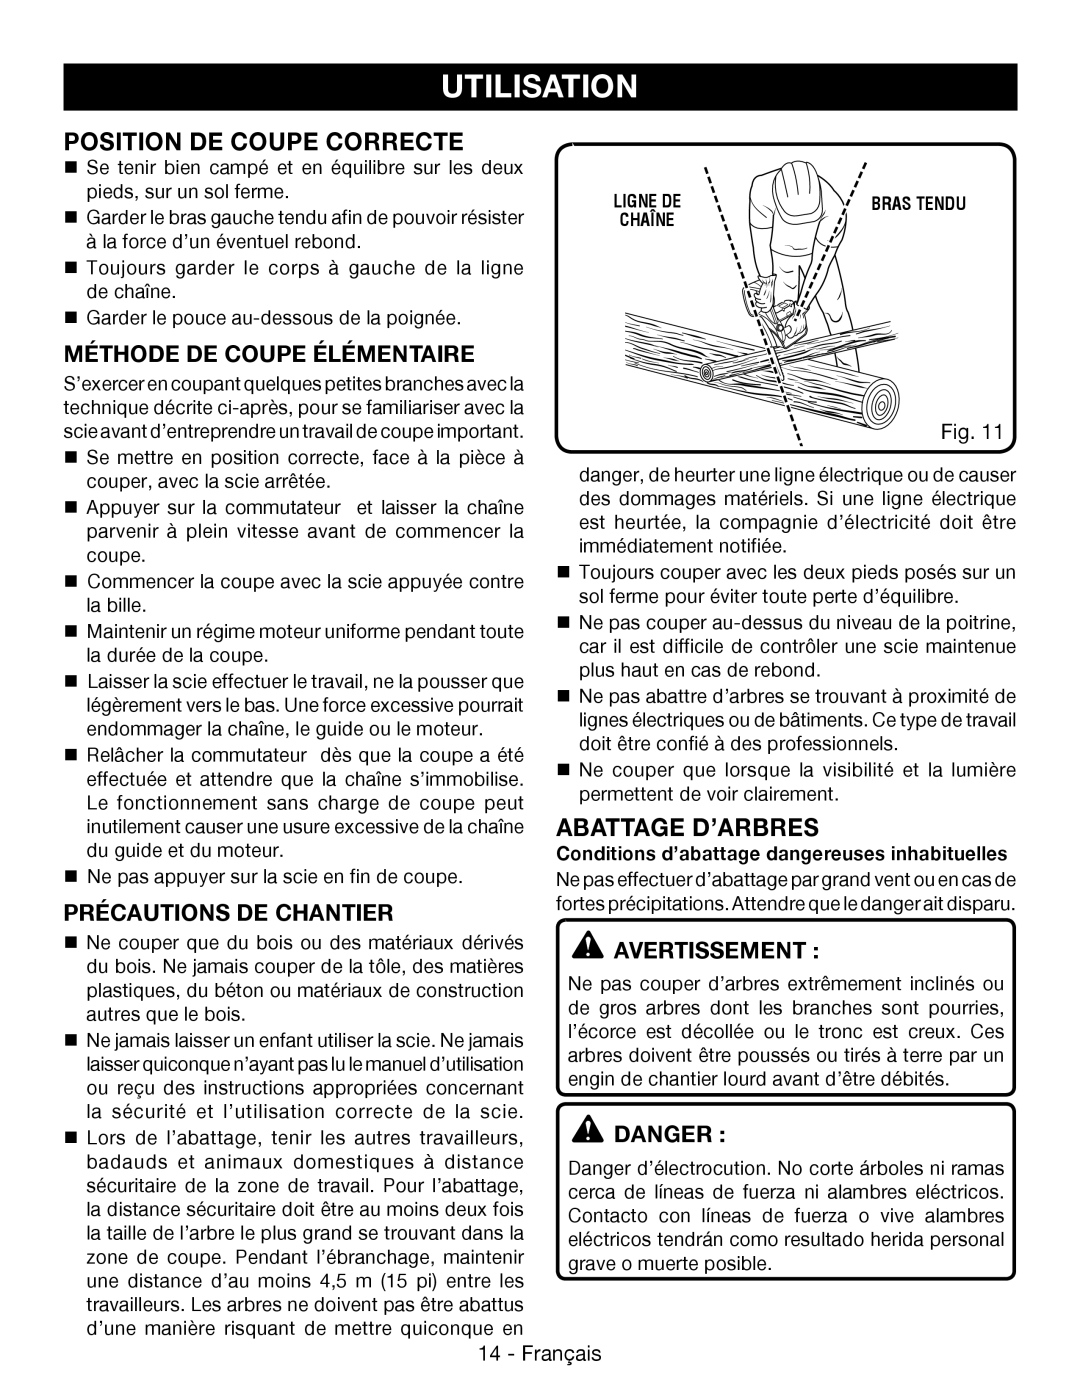 Ryobi P545 Position De Coupe Correcte, Abattage D’Arbres, Méthode De Coupe Élémentaire, Précautions De Chantier, Danger 